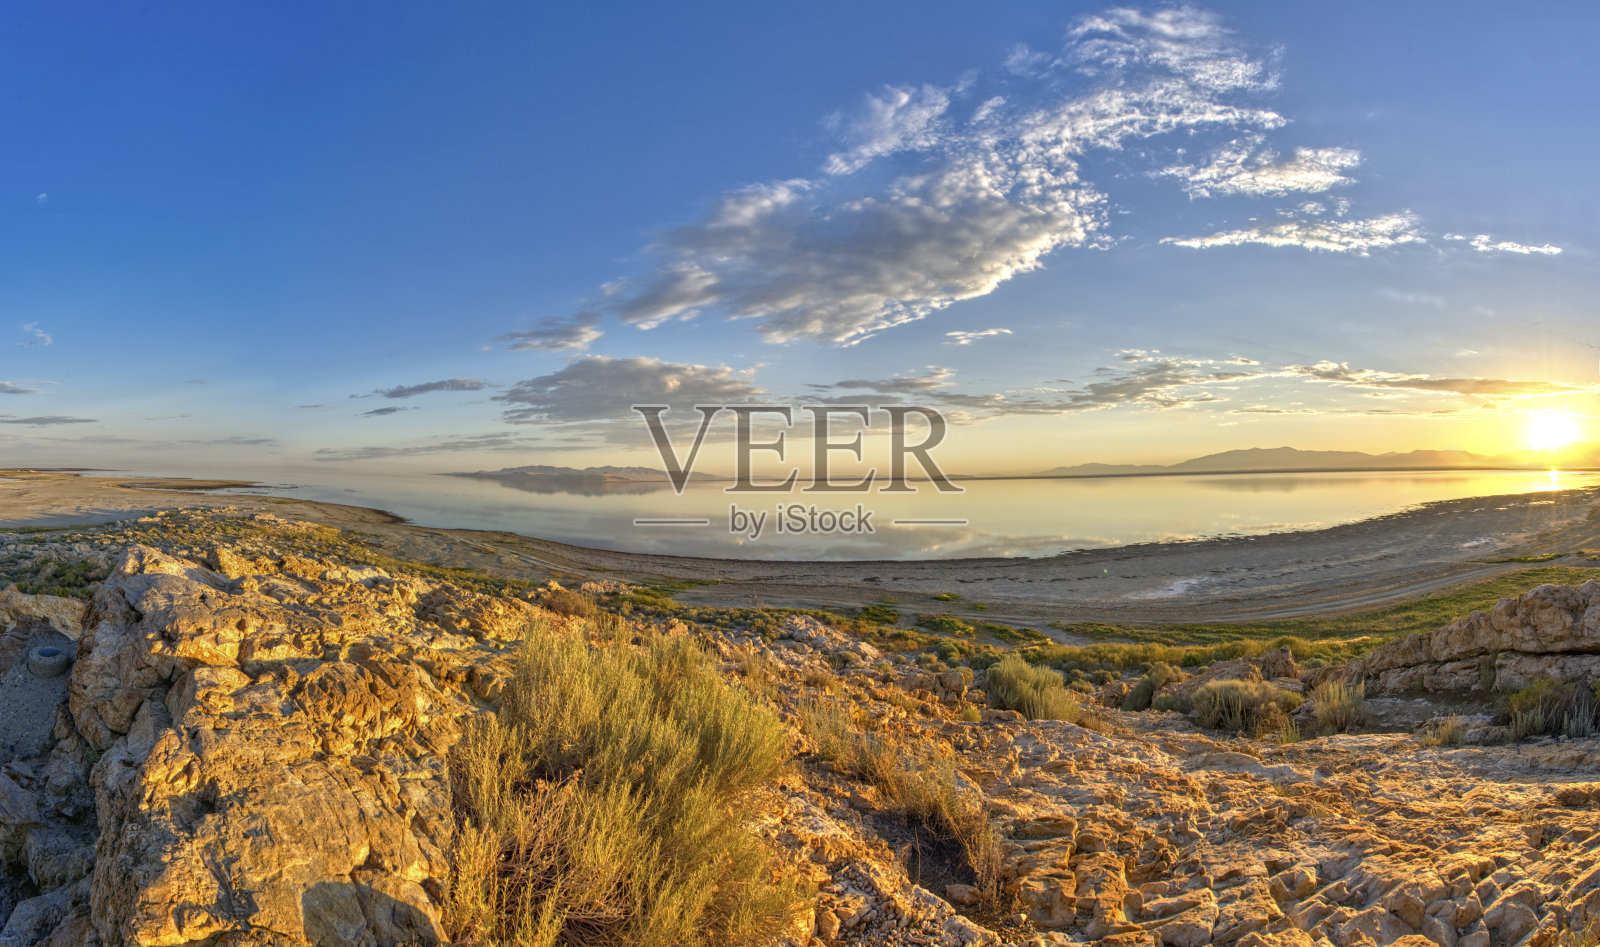 美轮美奂的日出
美国犹他州盐湖城附近的羚羊岛州立公园照片摄影图片